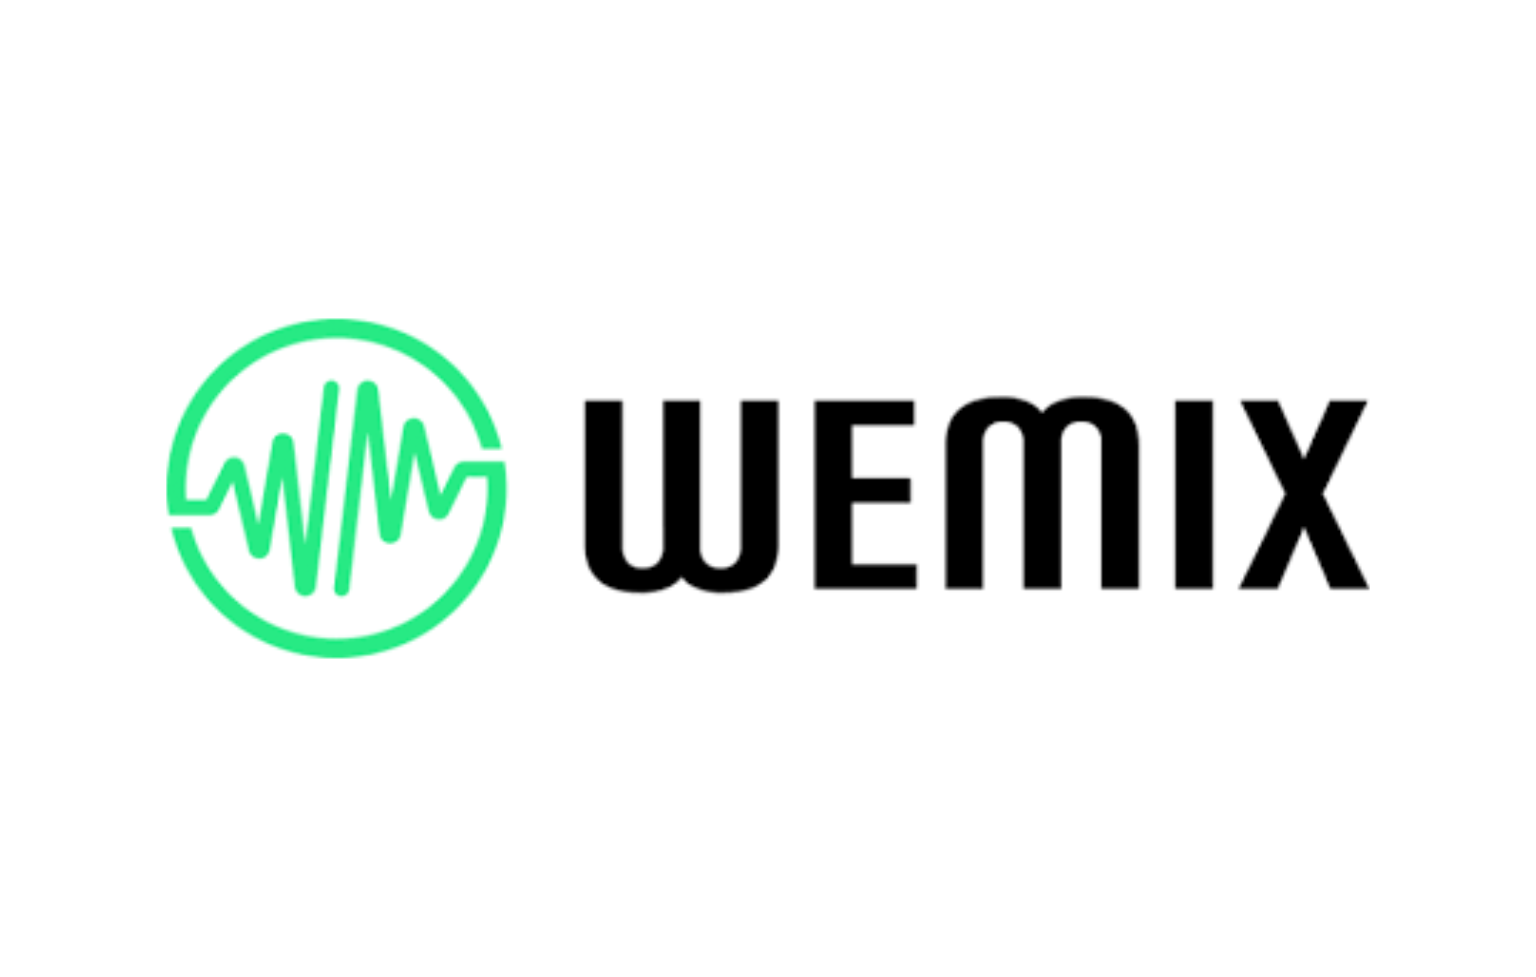 มาดูกันว่า WEMIX คืออะไร? เหรียญ WEMIX ใช้ทำอะไรบ้าง?